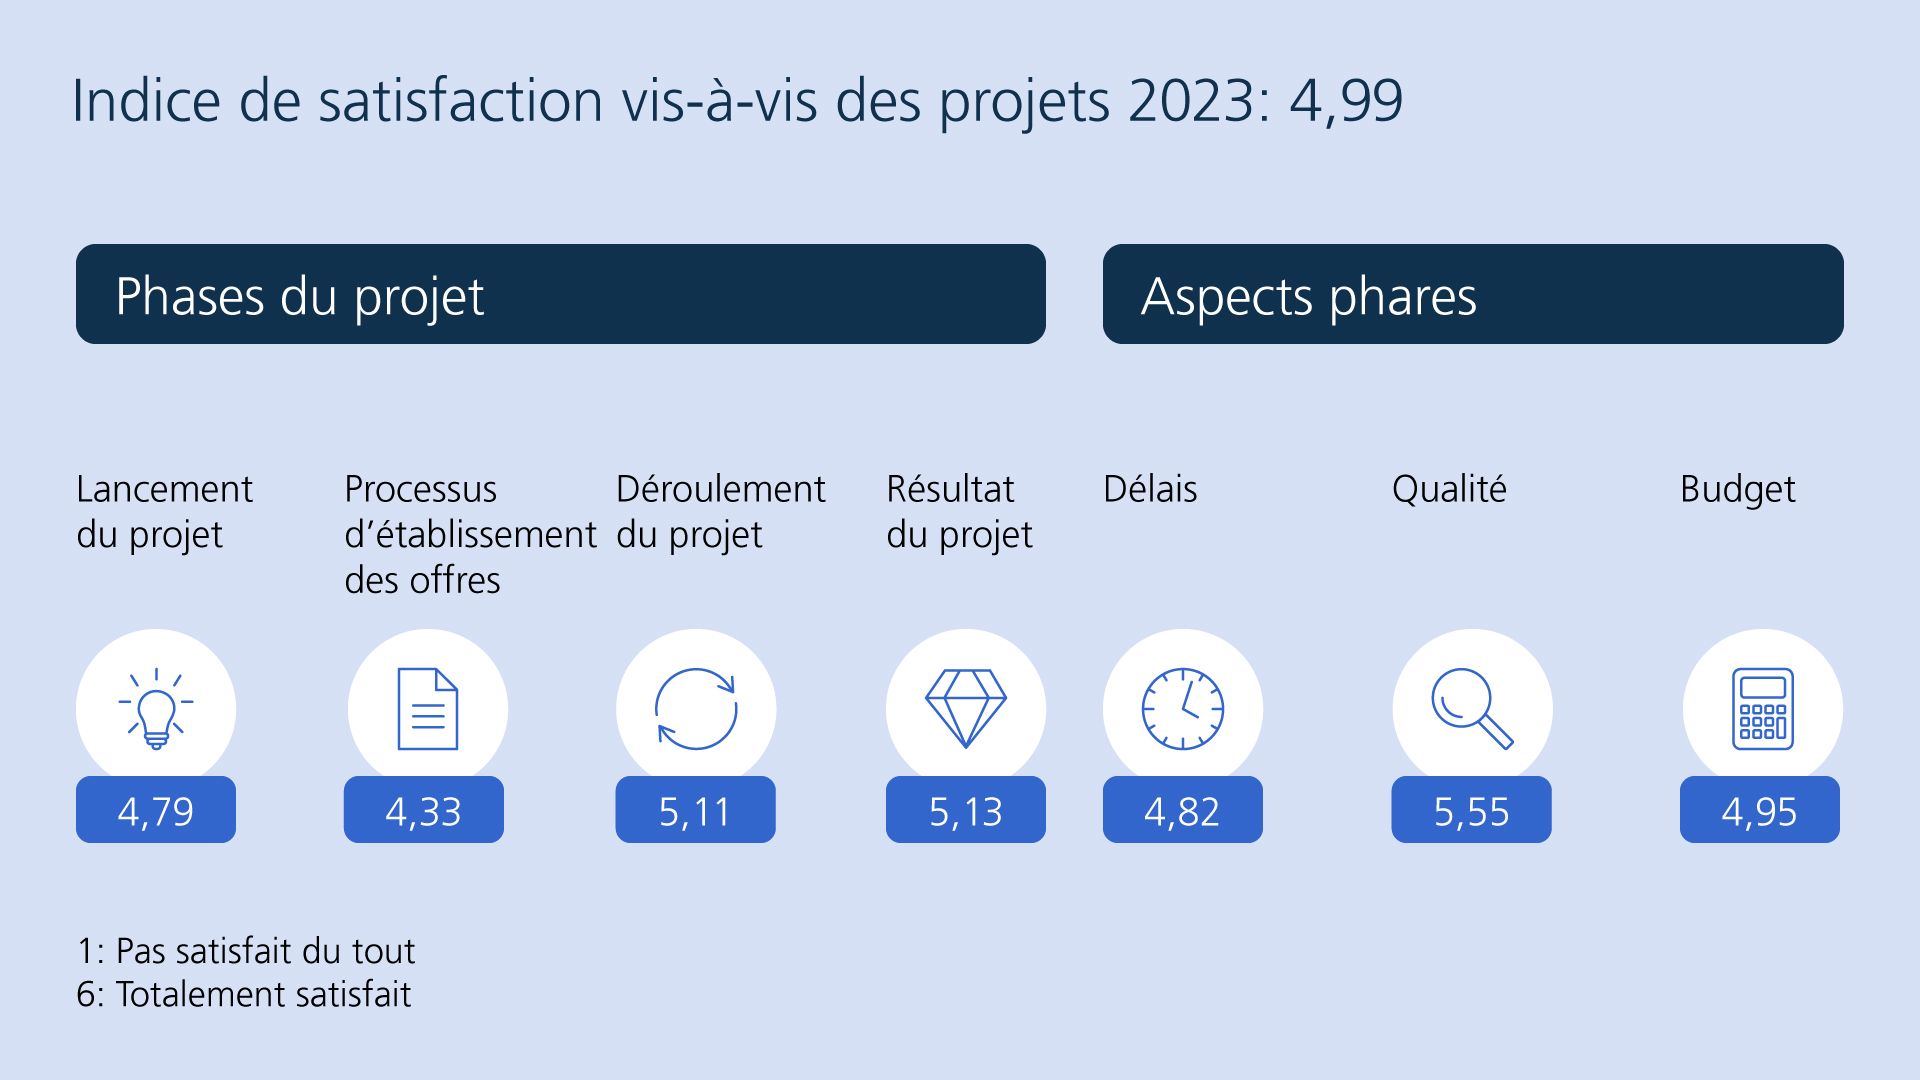 Indice de satisfaction pour les projets en 2023 (4,99), composé des différentes phases d’un projet : lancement du projet (4,79), processus d’établissement des offres (4,33), déroulement du projet (5,11), résultats du projet (5,13) ; aspects phares du projet : délais (4,82), qualité (5,55), budget (4,95). 1 : pas satisfait du tout, 6 : totalement satisfait.